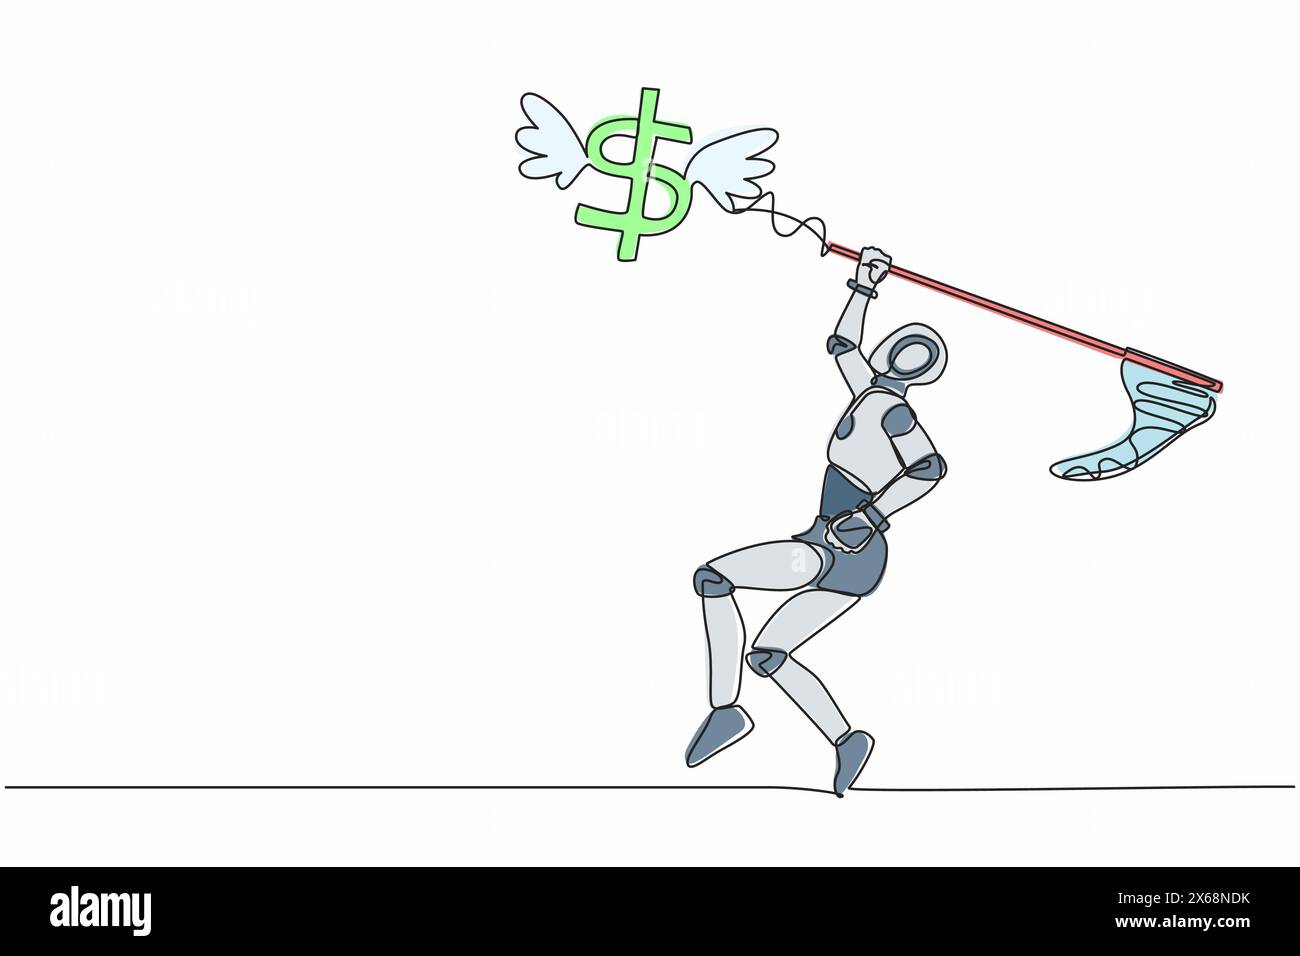 Robot de dessin continu d'une ligne essayer d'attraper le symbole de signe de dollar volant avec filet de papillon. Finance crise économique. Robot humanoïde cybernétique org Illustration de Vecteur